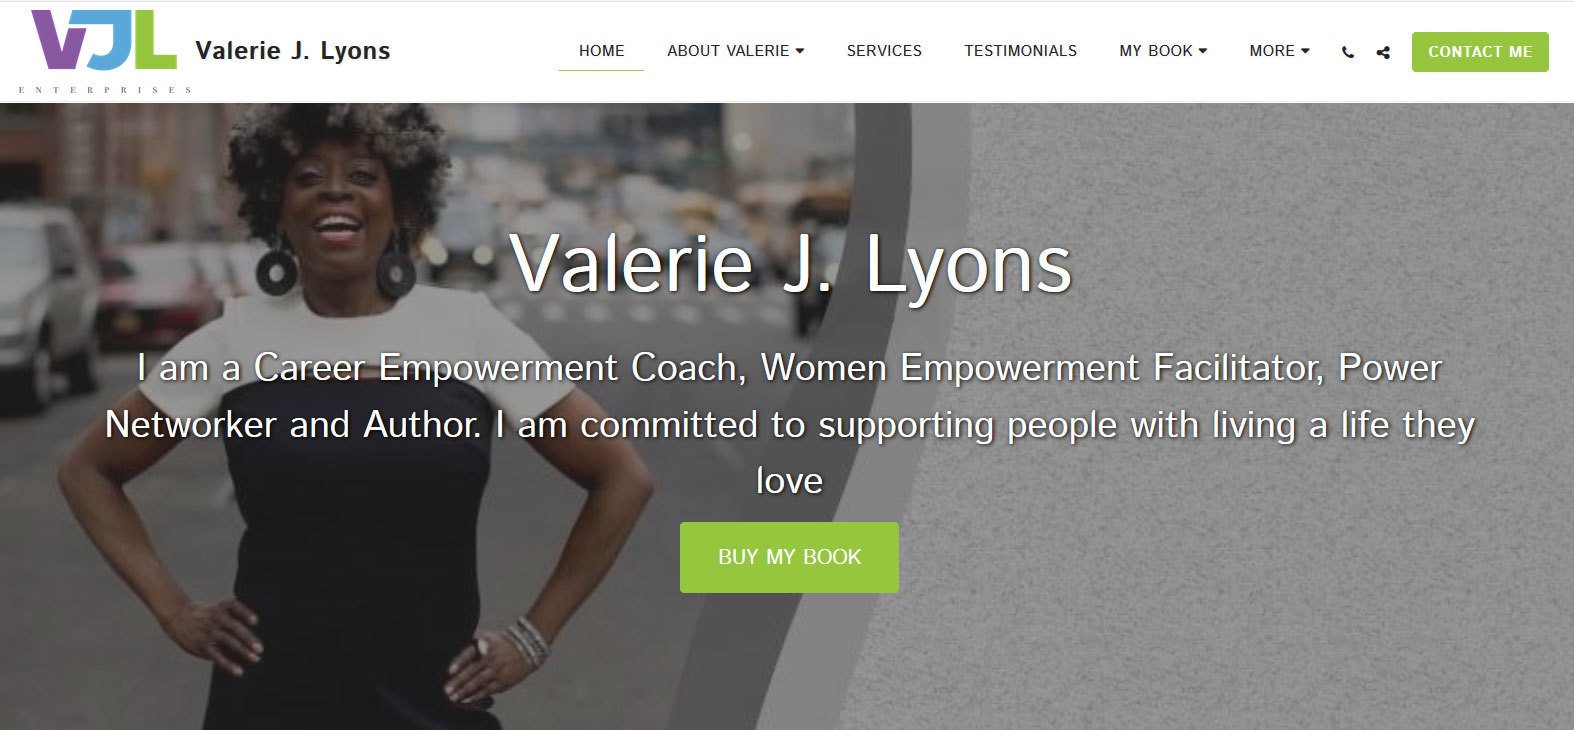 A Career Empowerment Coach